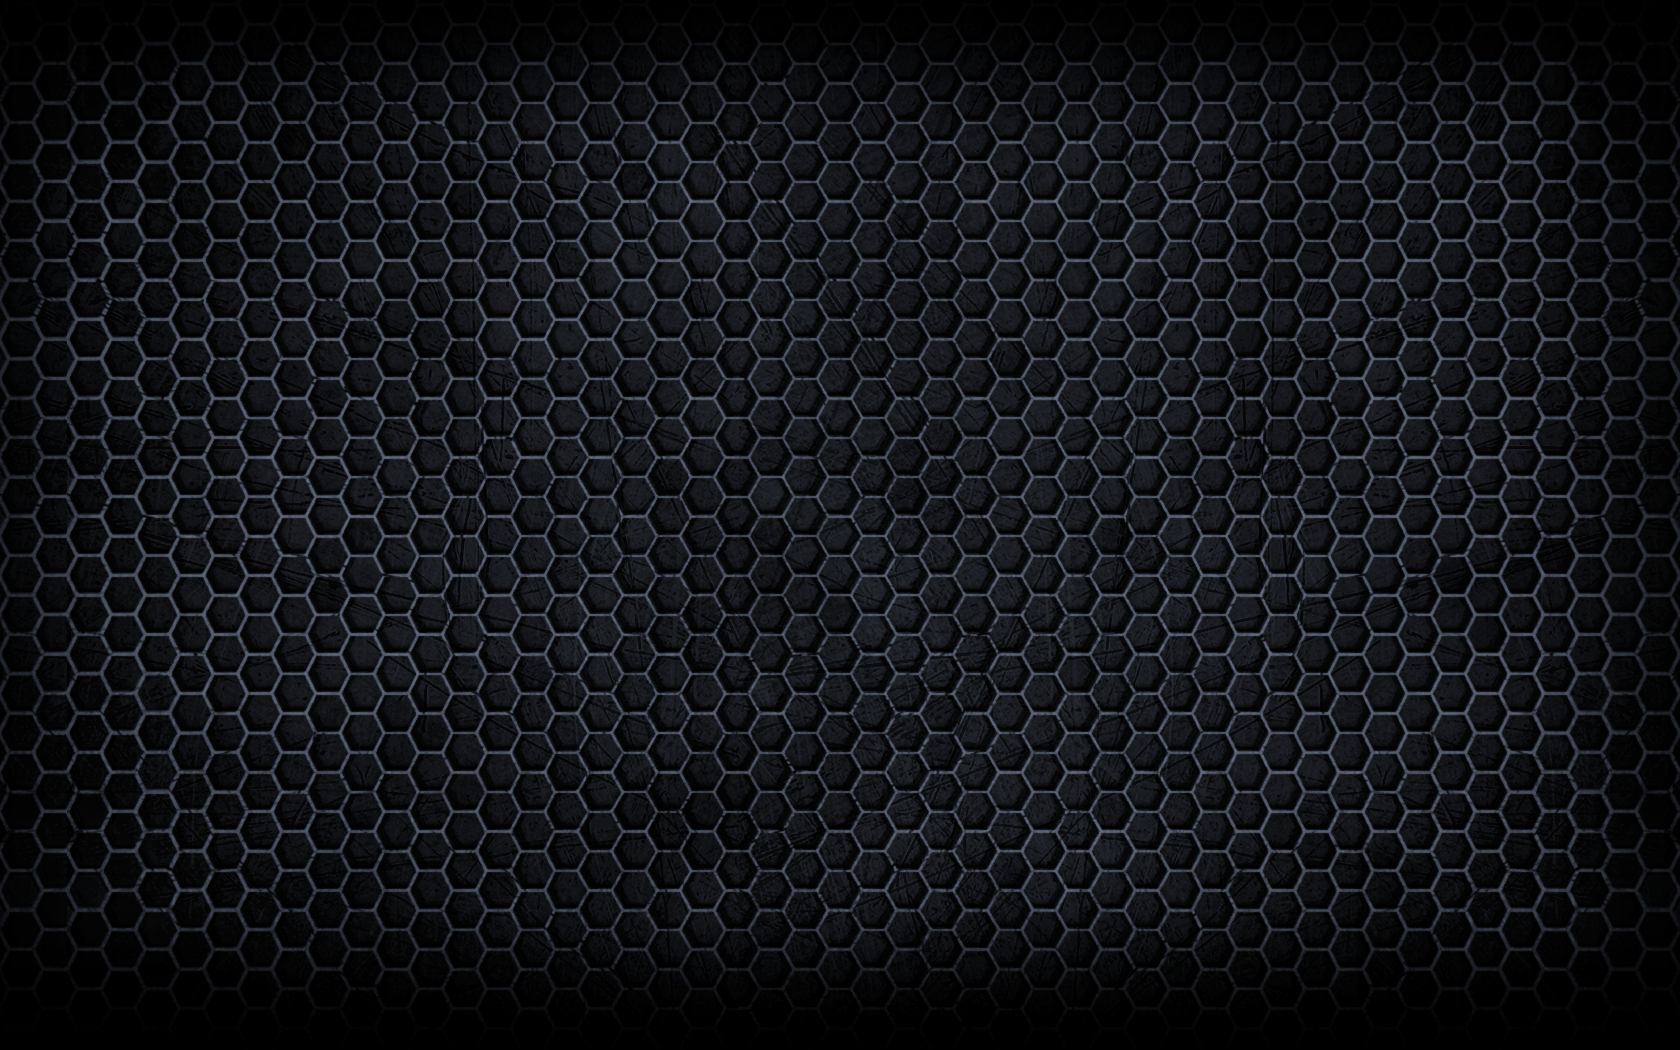 Nanosuit Texture Wallpaper By Blakegedye